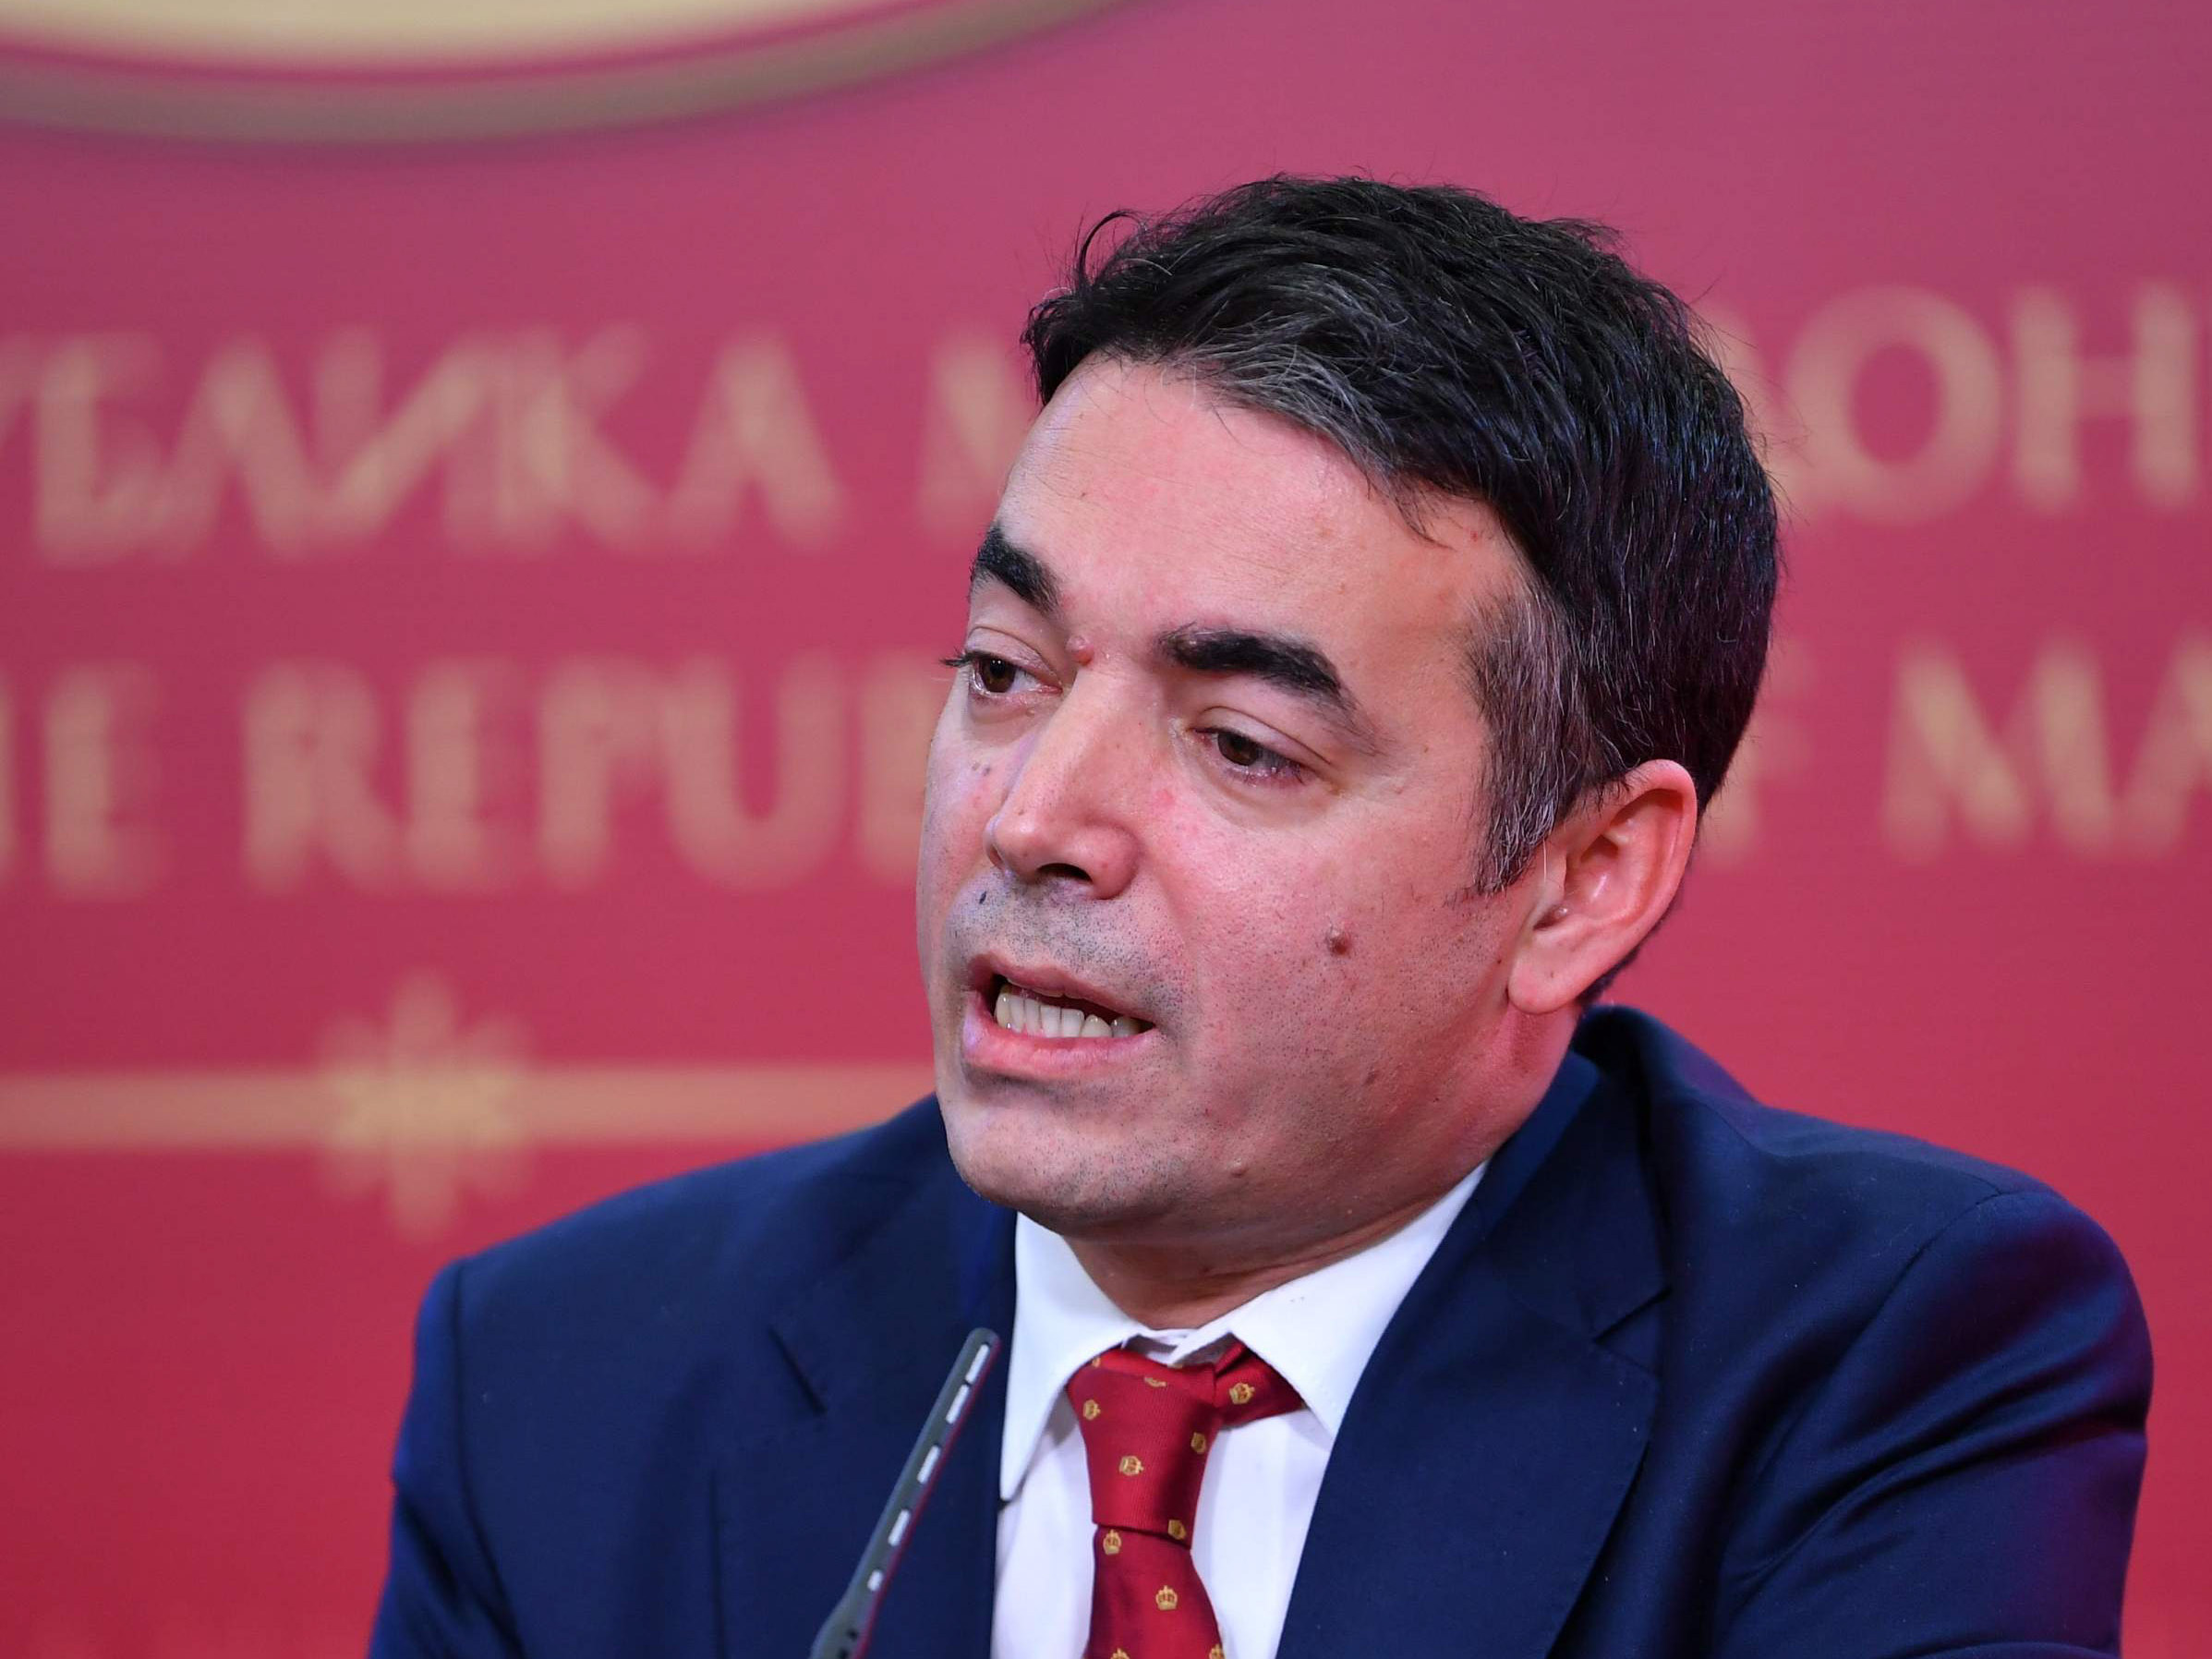 Σκόπια: Πρόταση δυσπιστίας κατά του αντιπροέδρου Νίκολα Ντιμιτρόφ